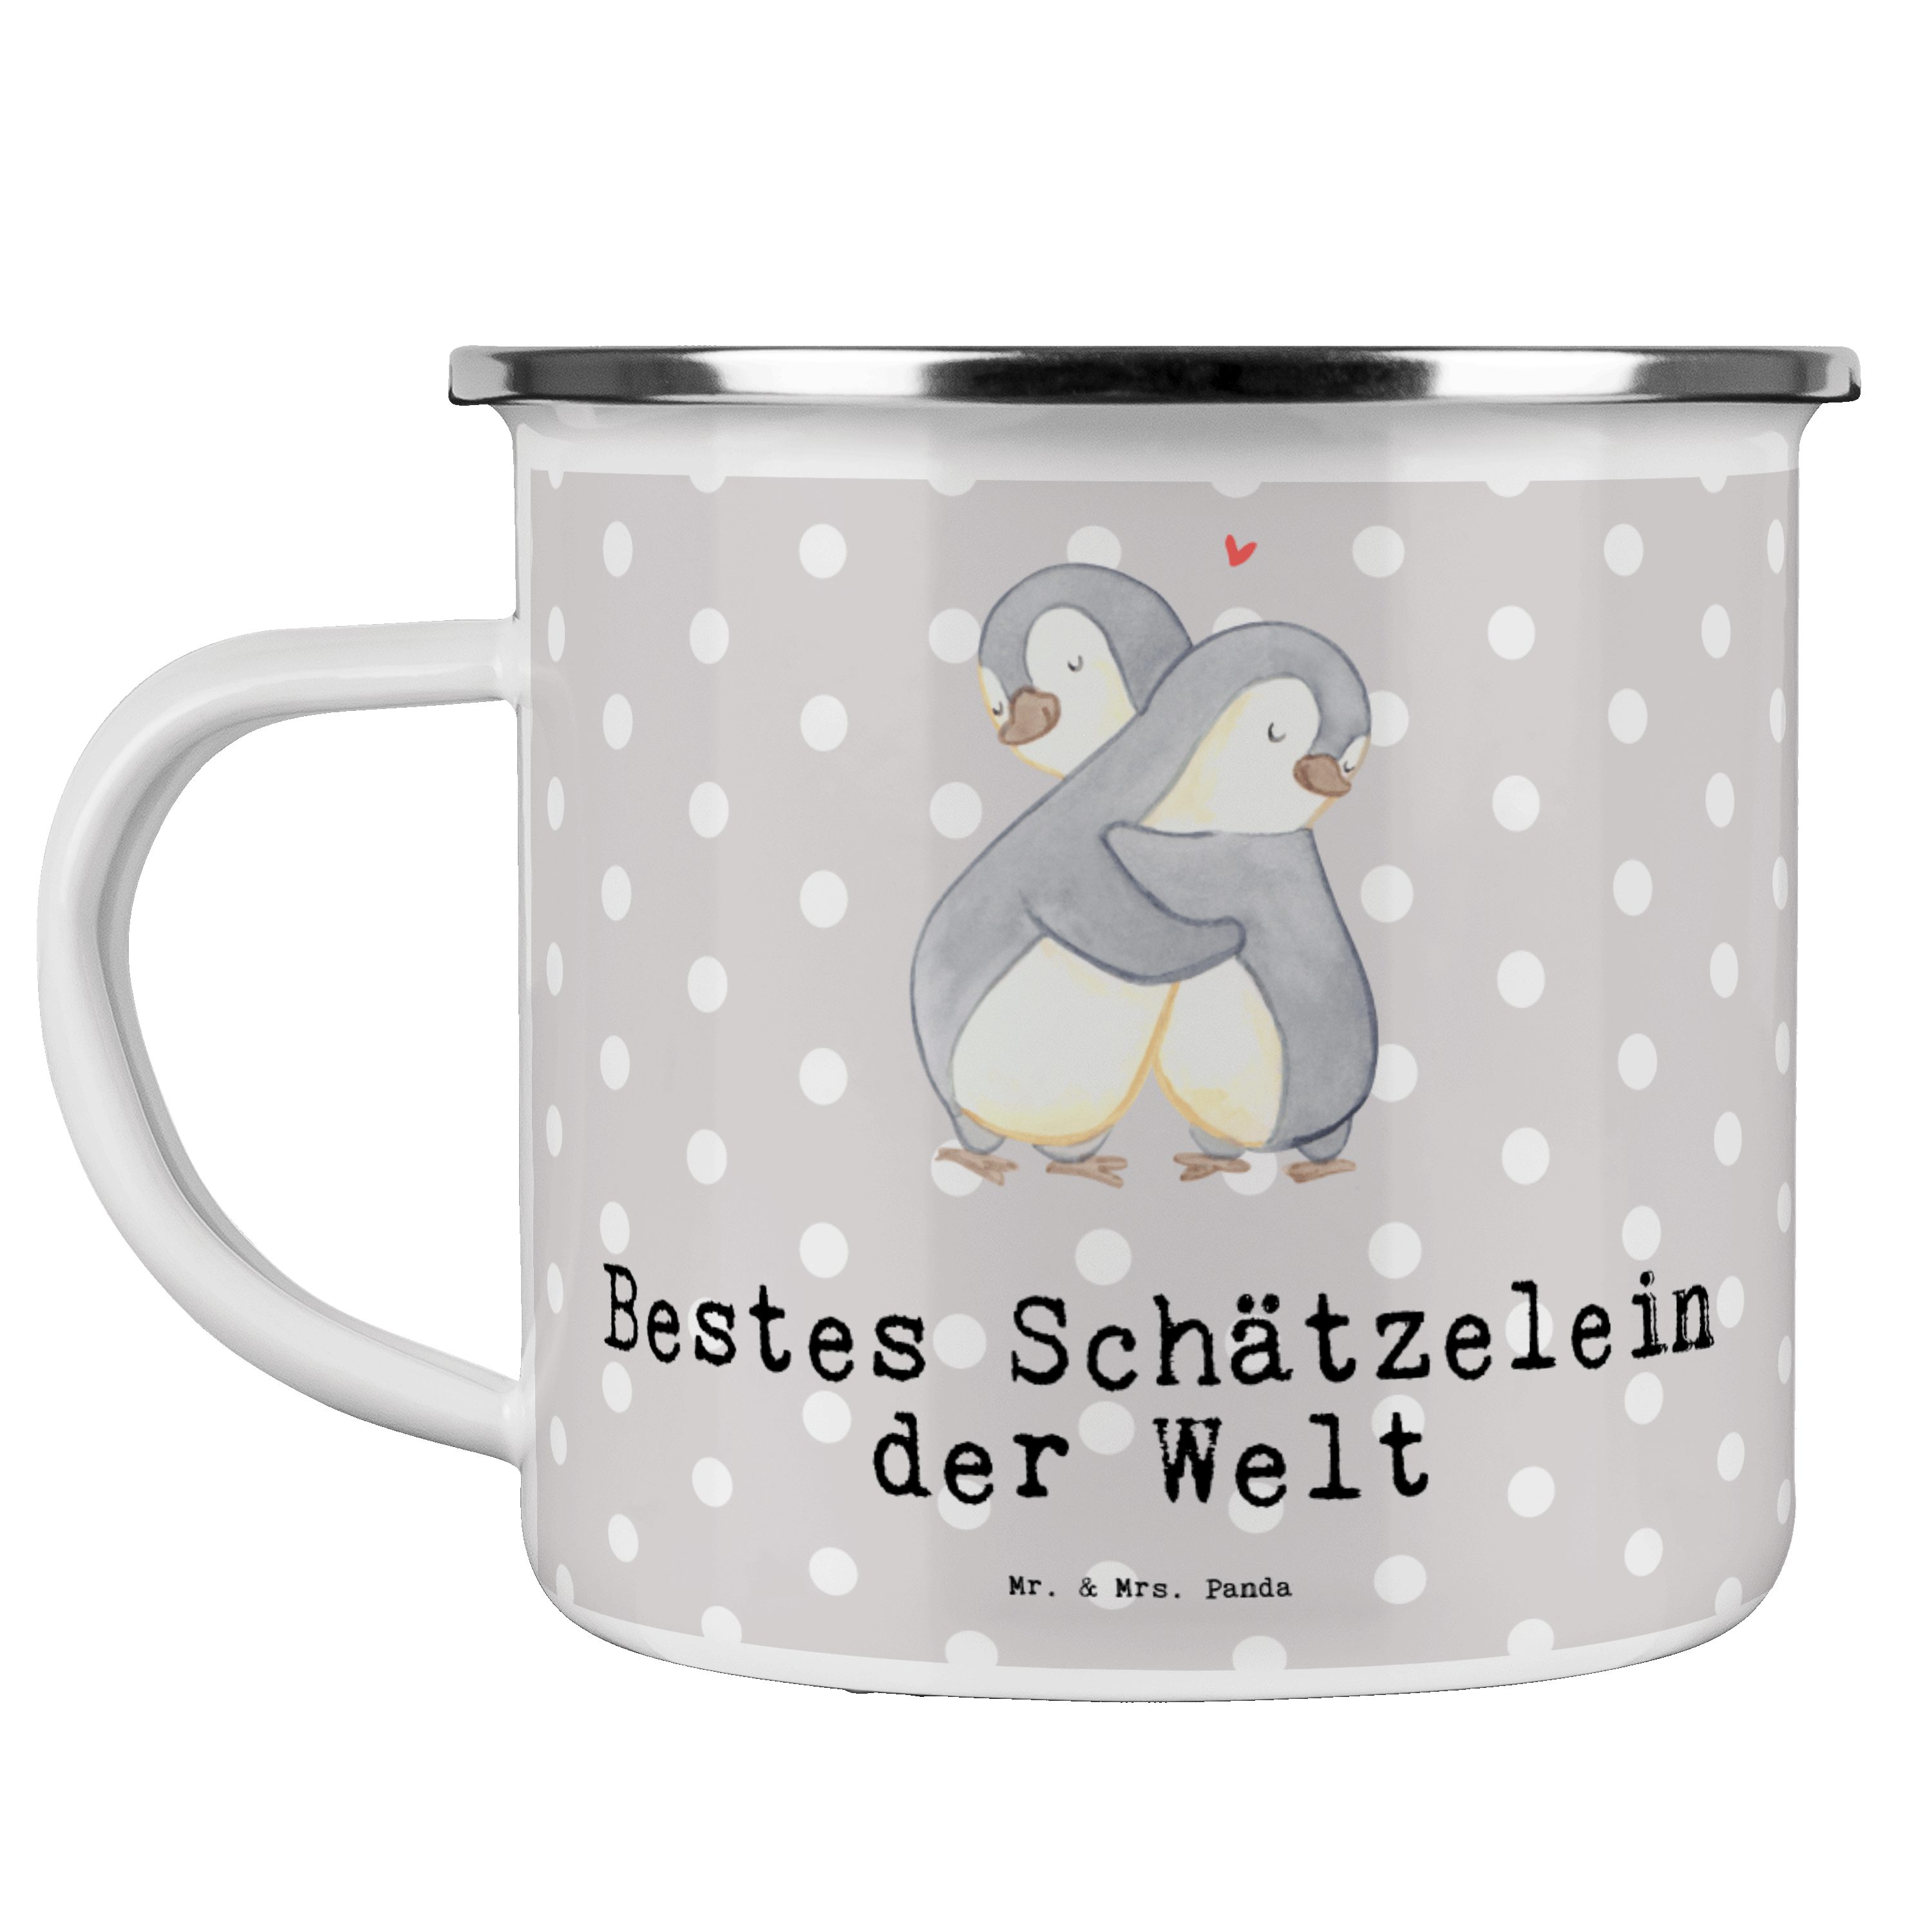 & Grau Pastell Panda Schätzelein - Emaille - Geschenk, Bestes Mr. Pinguin Welt Mrs. Metall, der Becher